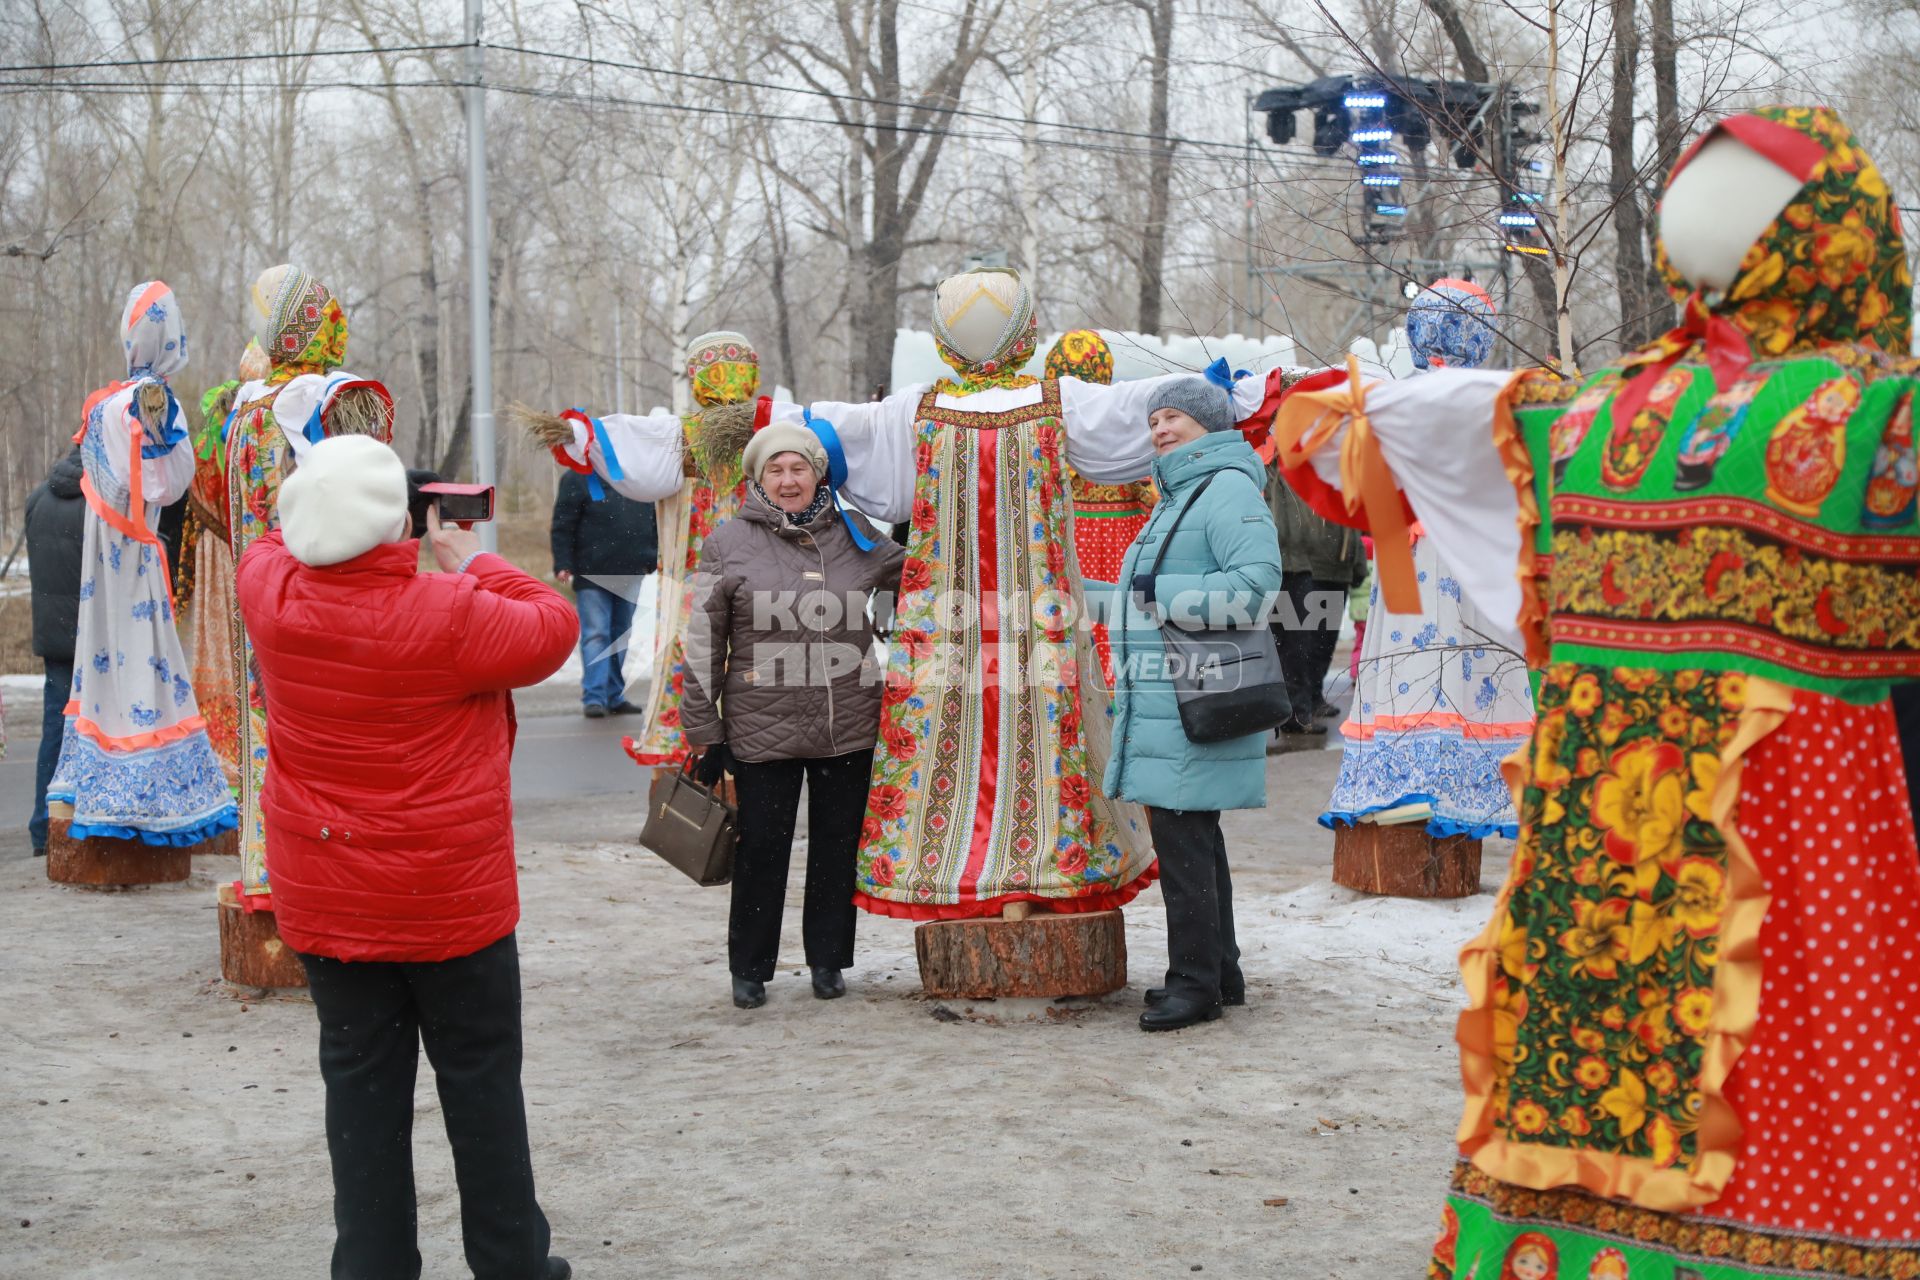 Красноярск. Женщины фотографируются во время масленичных гуляний.